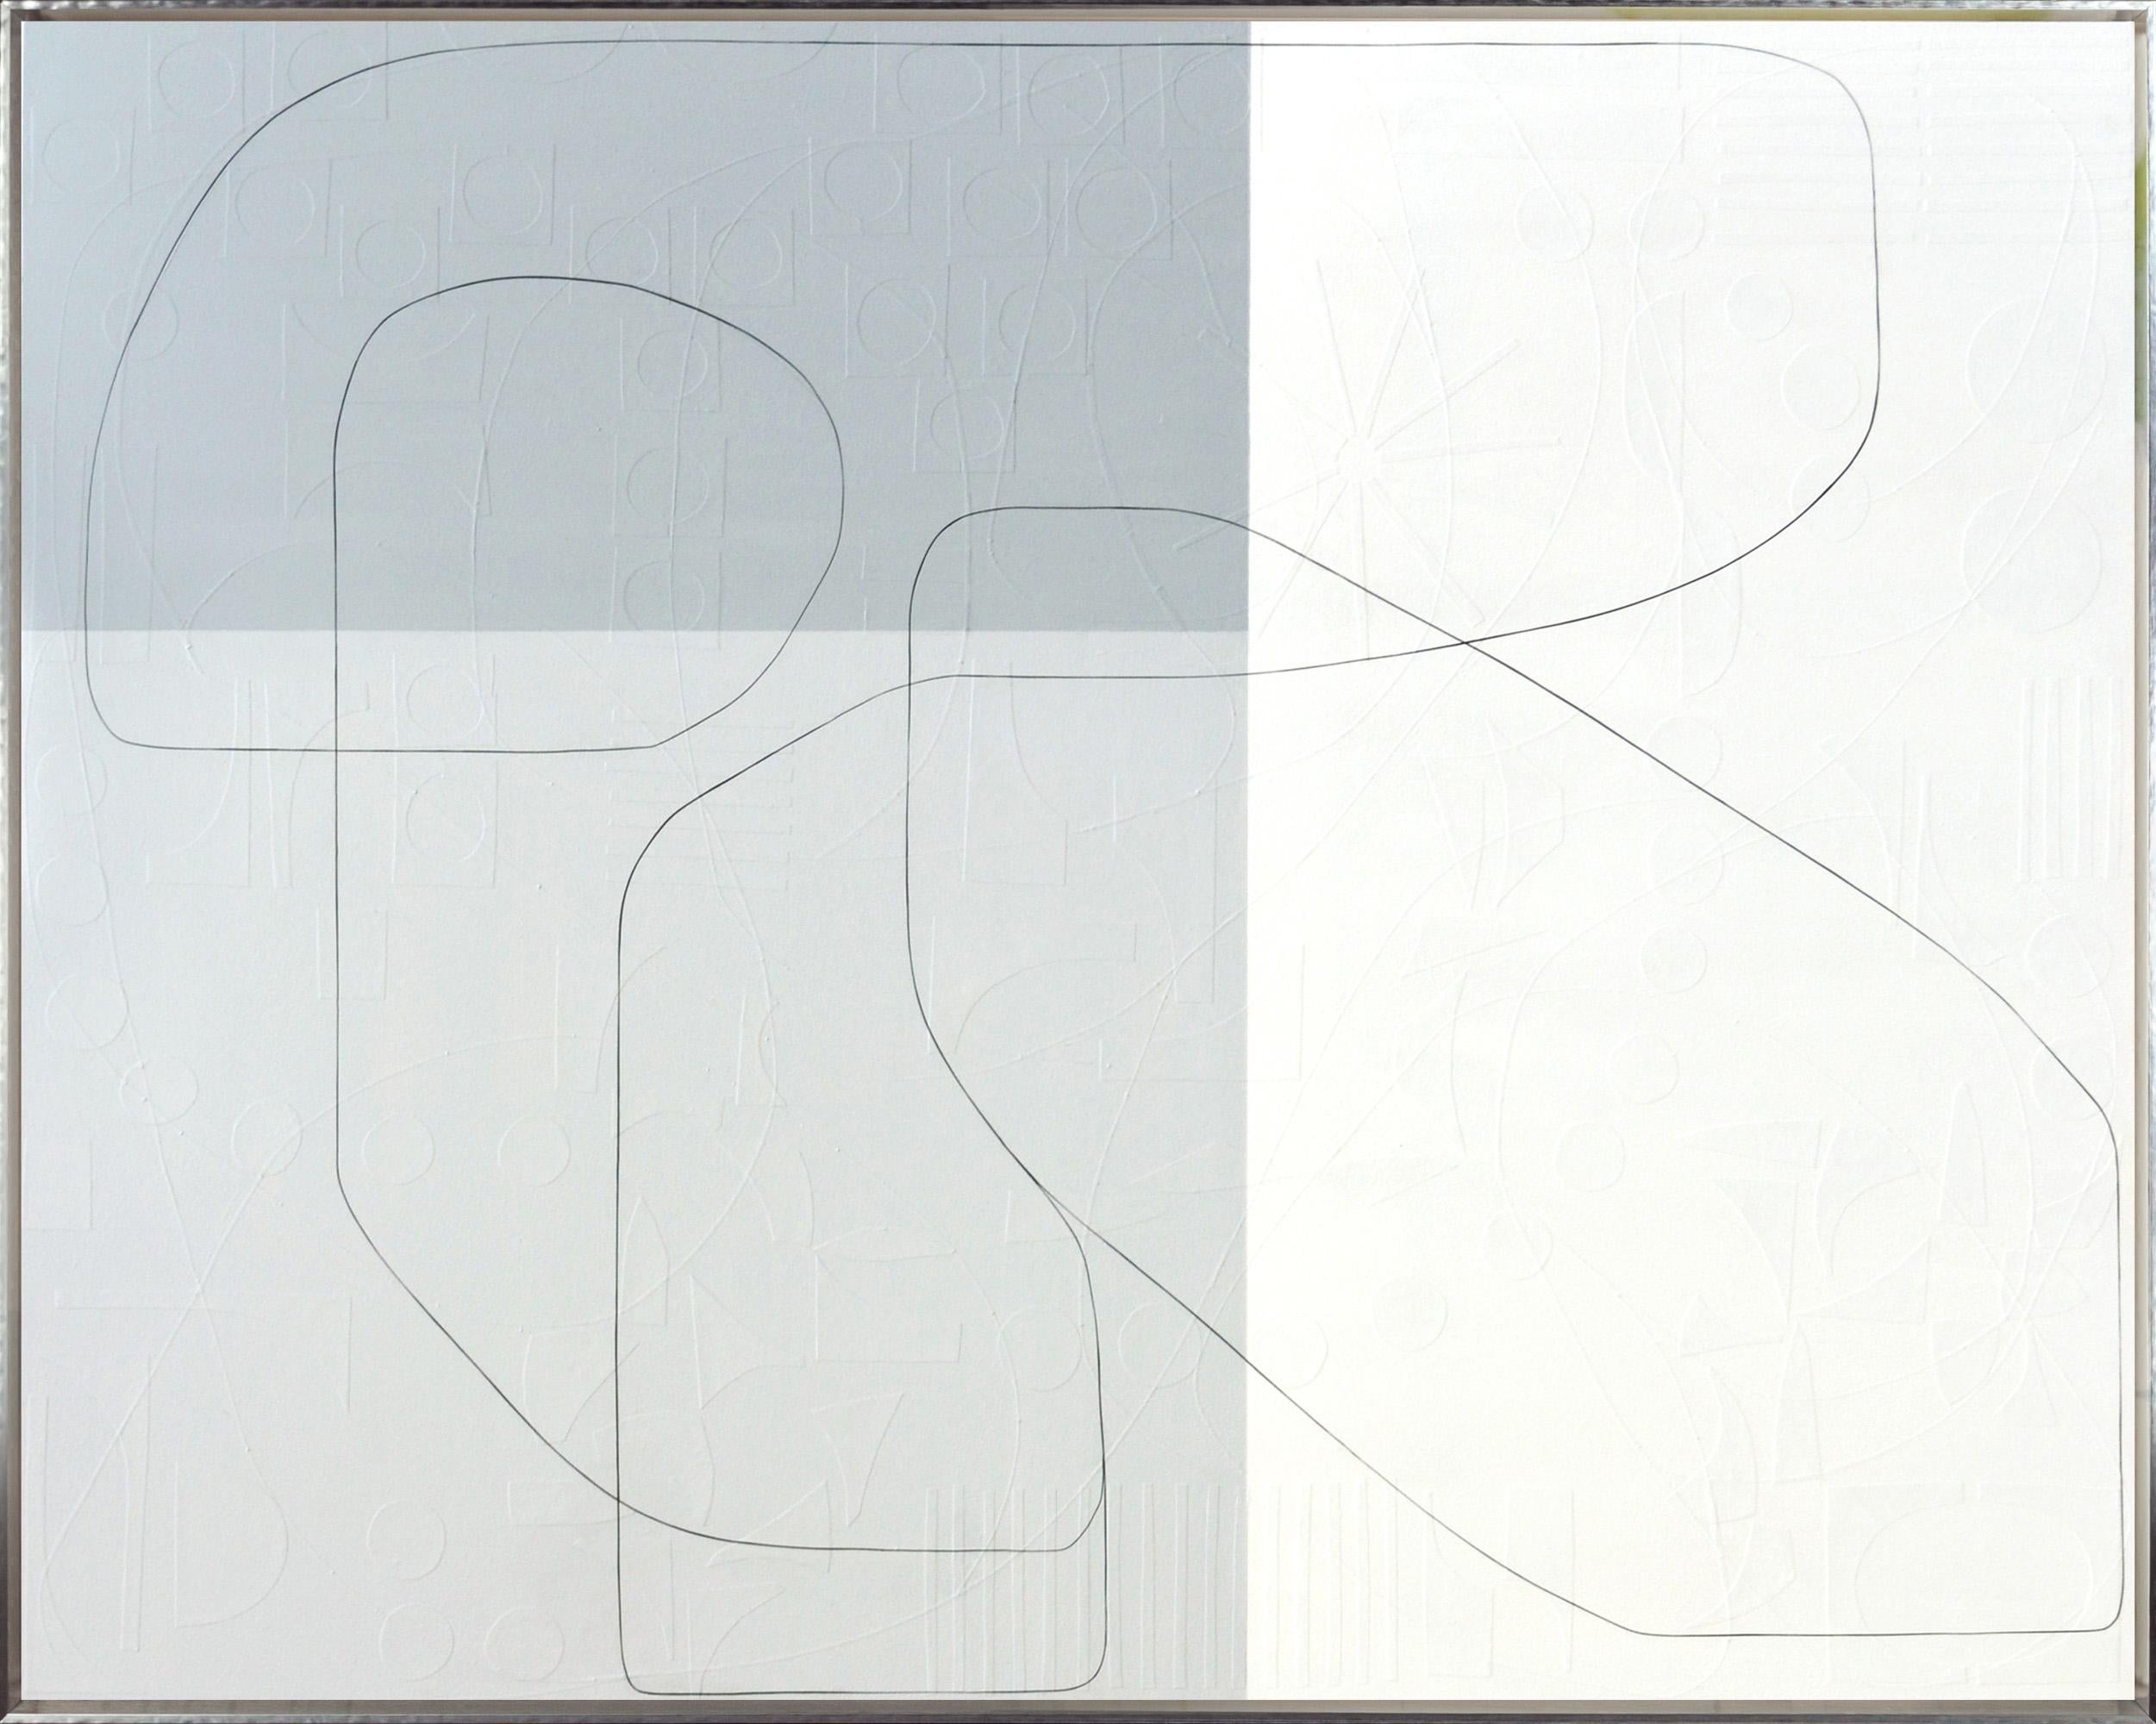 « Boomerang », abstrait avec texture recouverte de papier dans des tons neutres